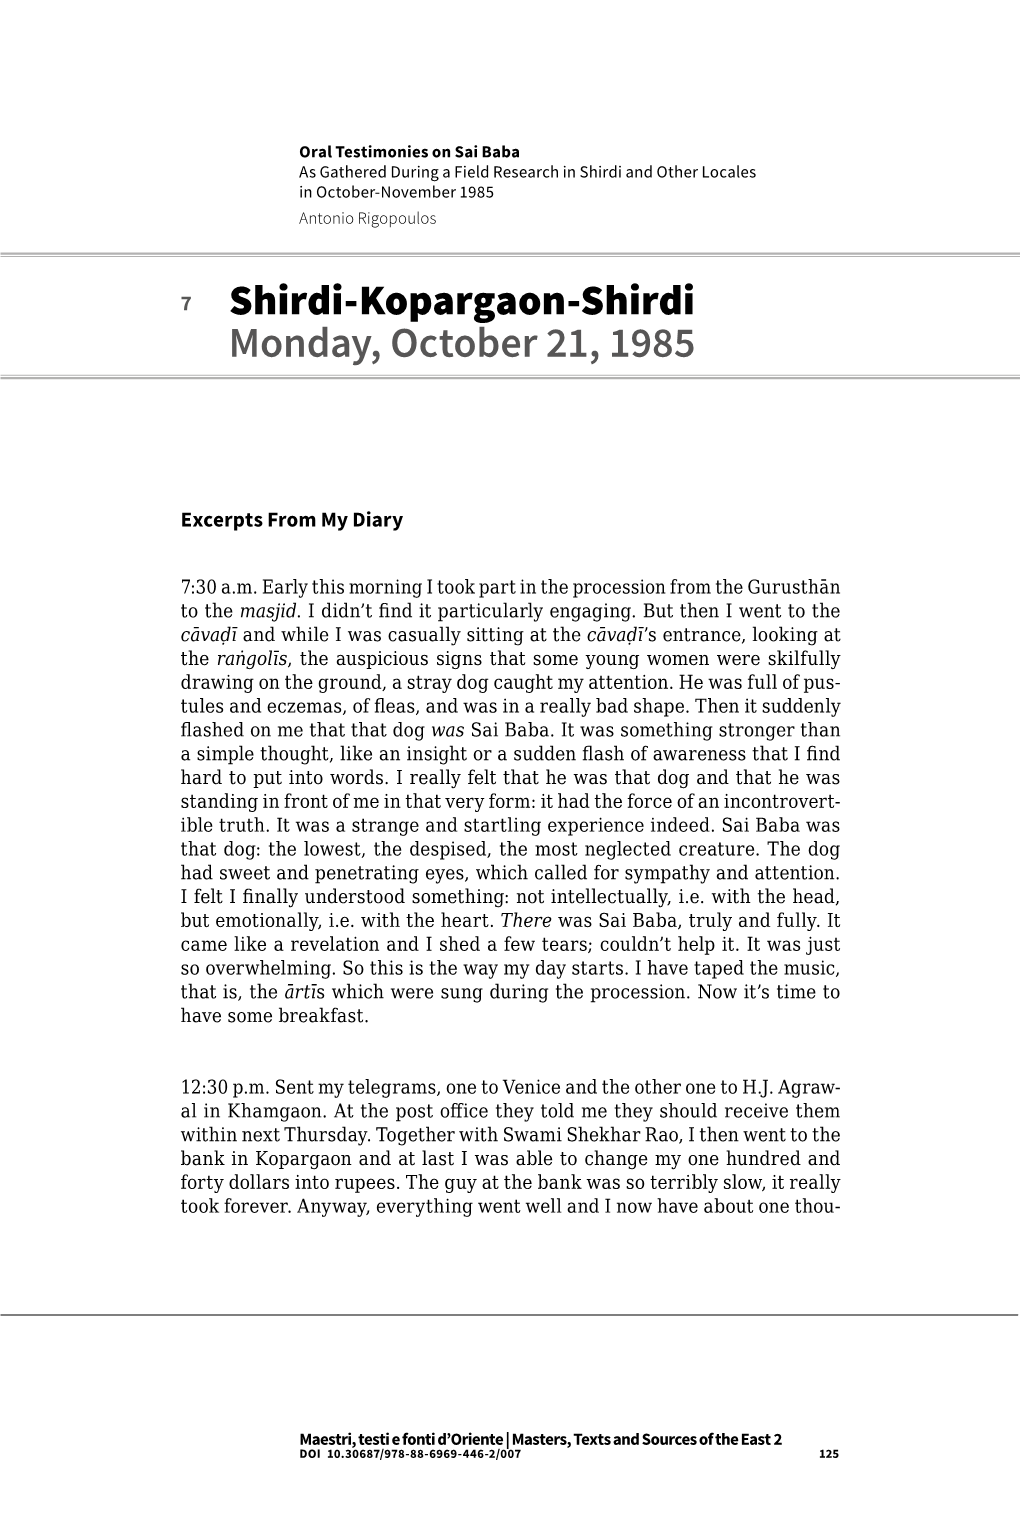 Shirdi-Kopargaon-Shirdi Monday, October 21, 1985